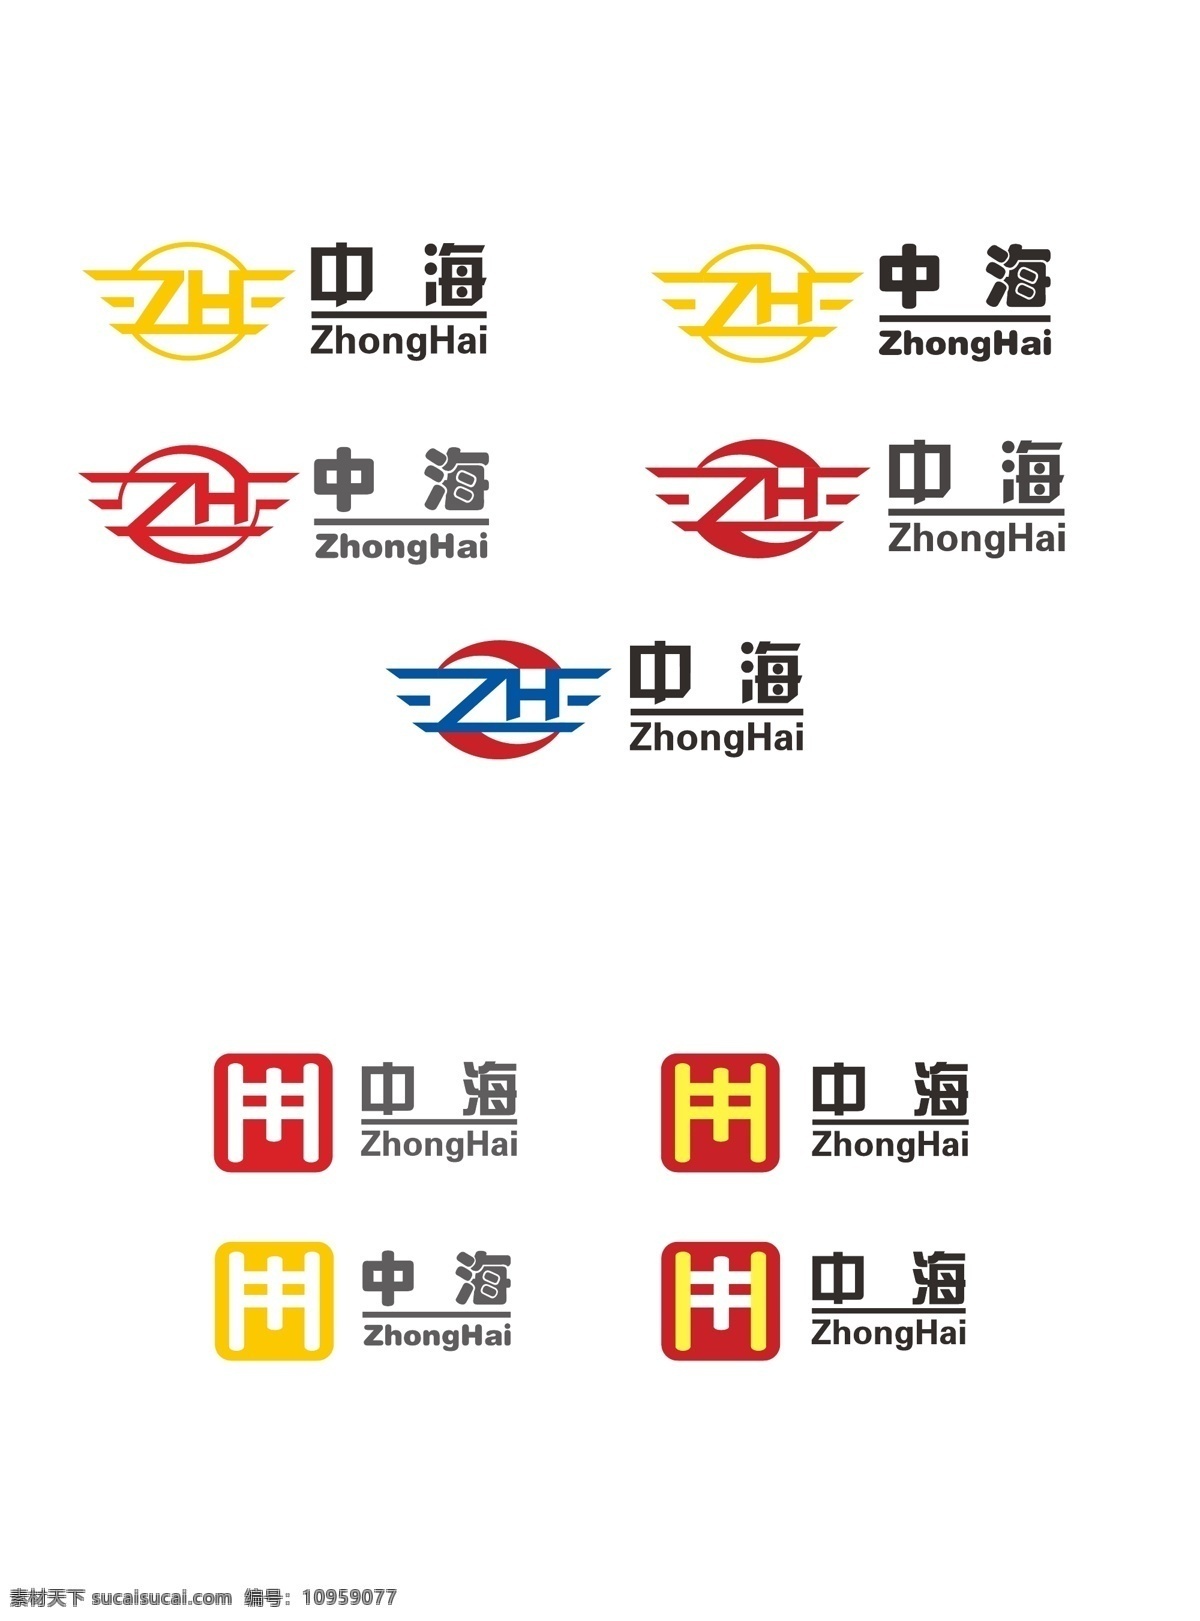 中海 轮胎 标志设计 标志 logo logo设计 红色 蓝色 黄色 zh 中海轮胎 轮胎标志 轮胎logo 企业 标识标志图标 矢量